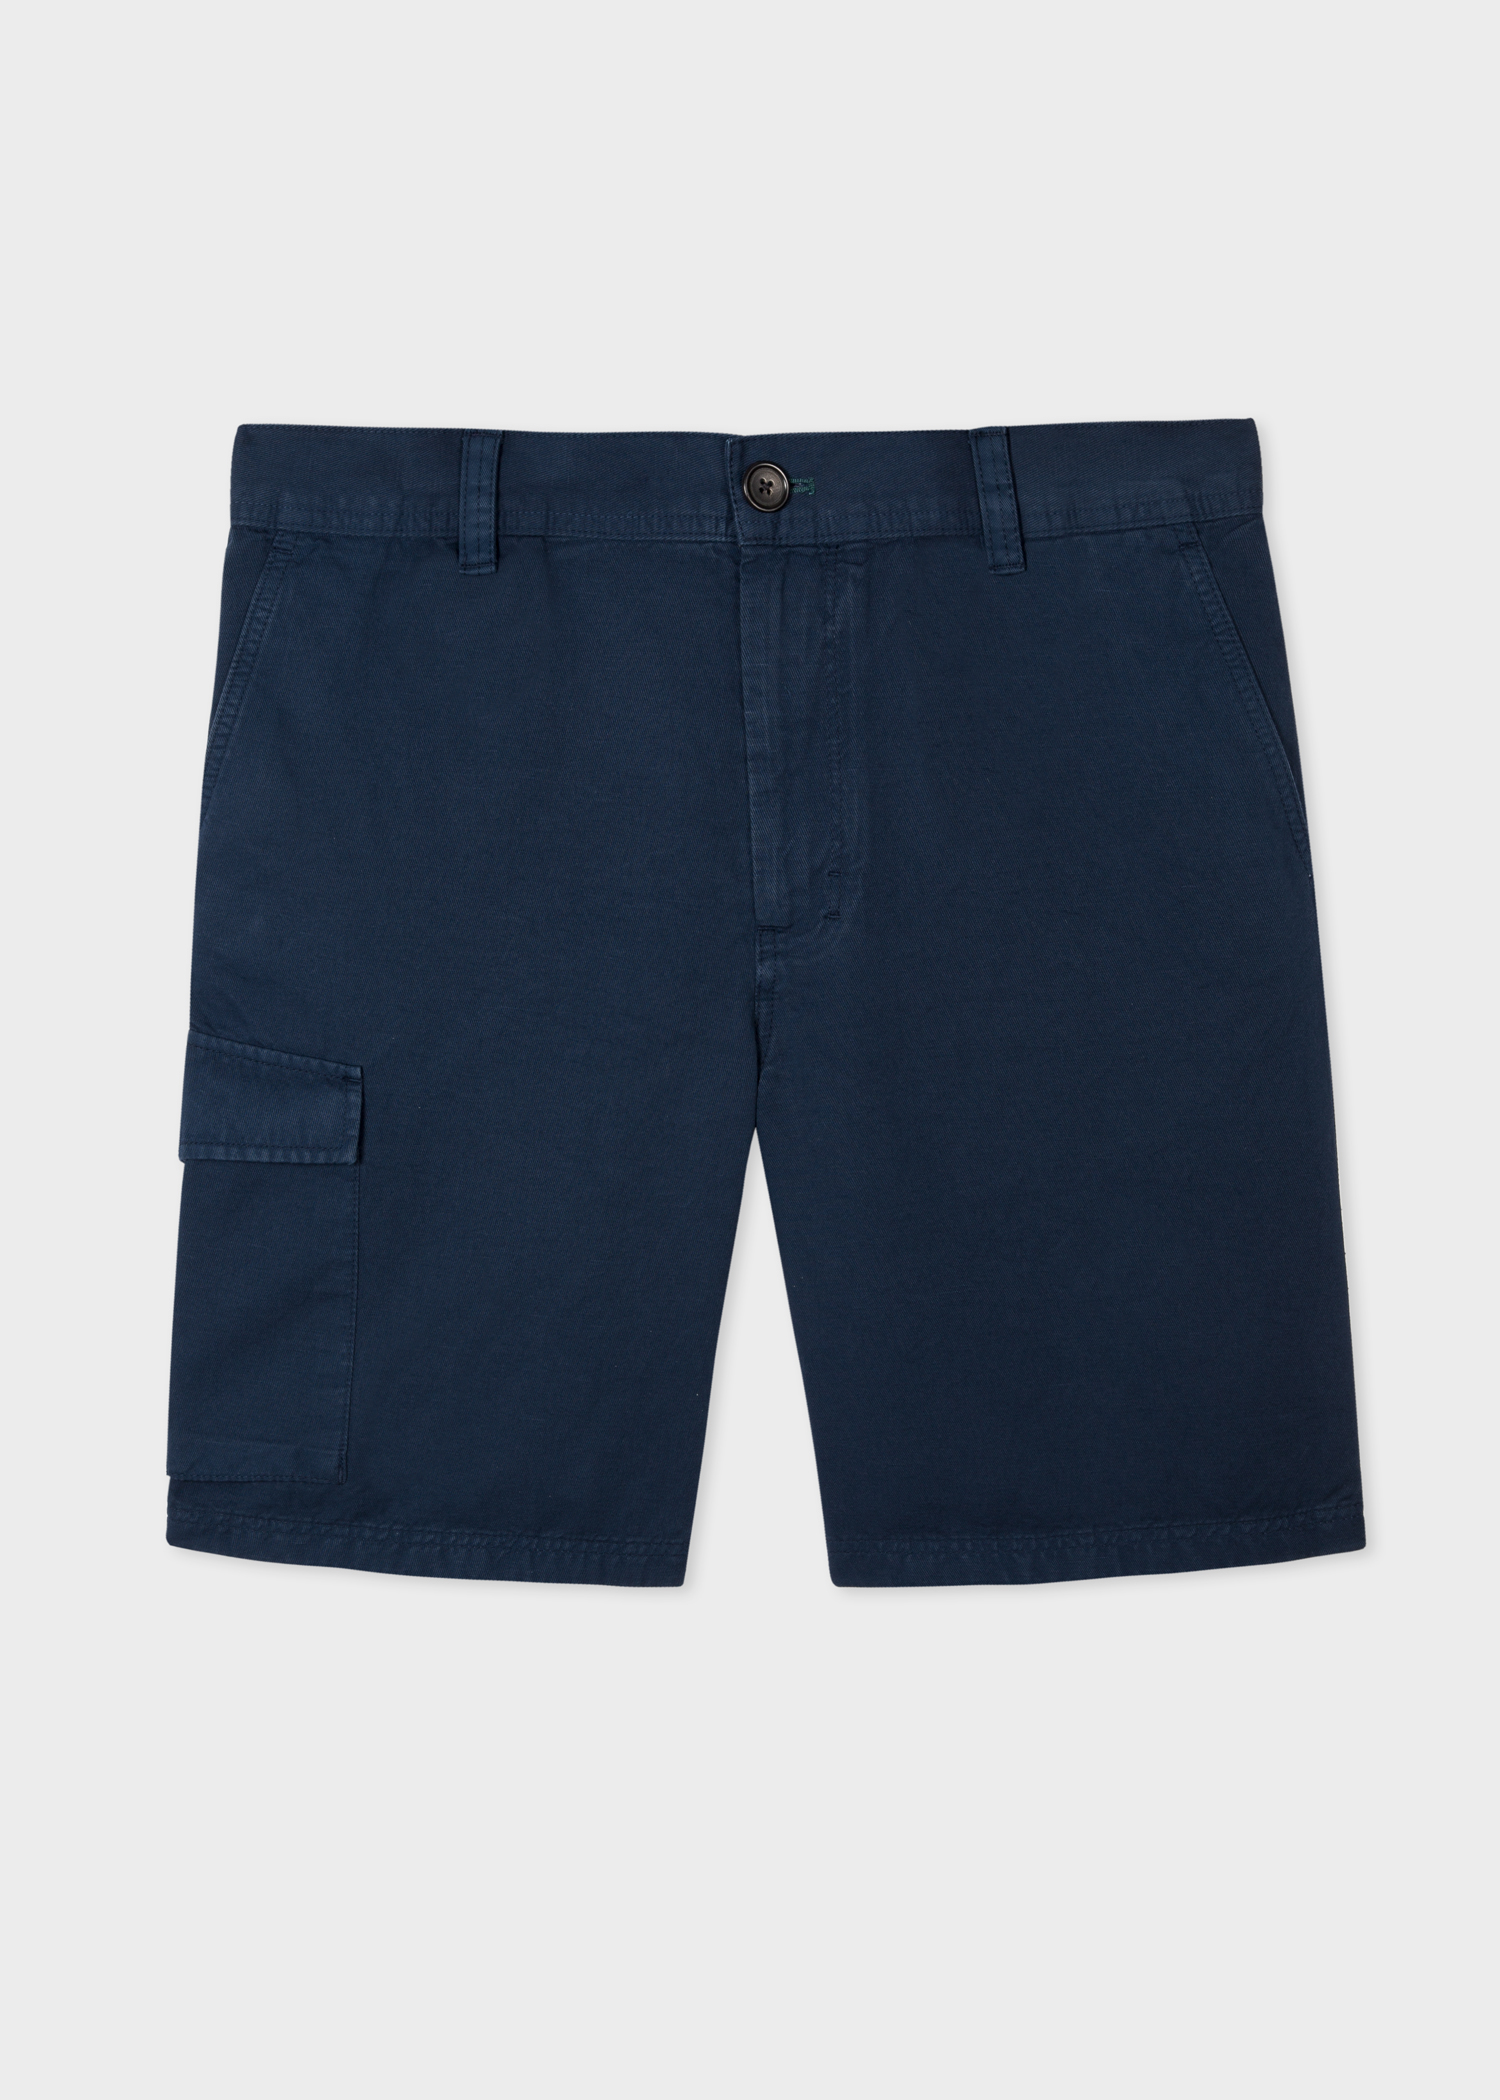 Men's Navy Blue Cotton-Linen Shorts